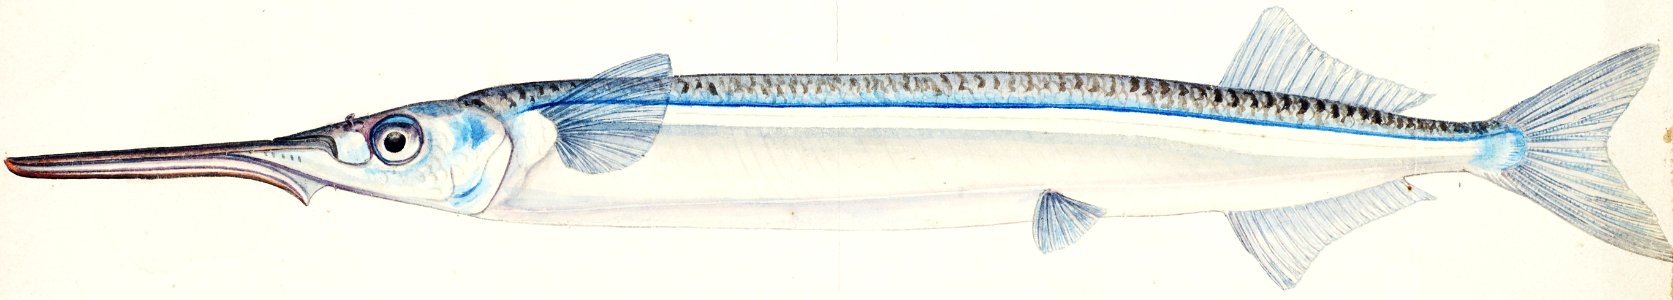 Antique fish Hyporhamphus Melanochir drawn by Fe. Clarke (1849-1899).